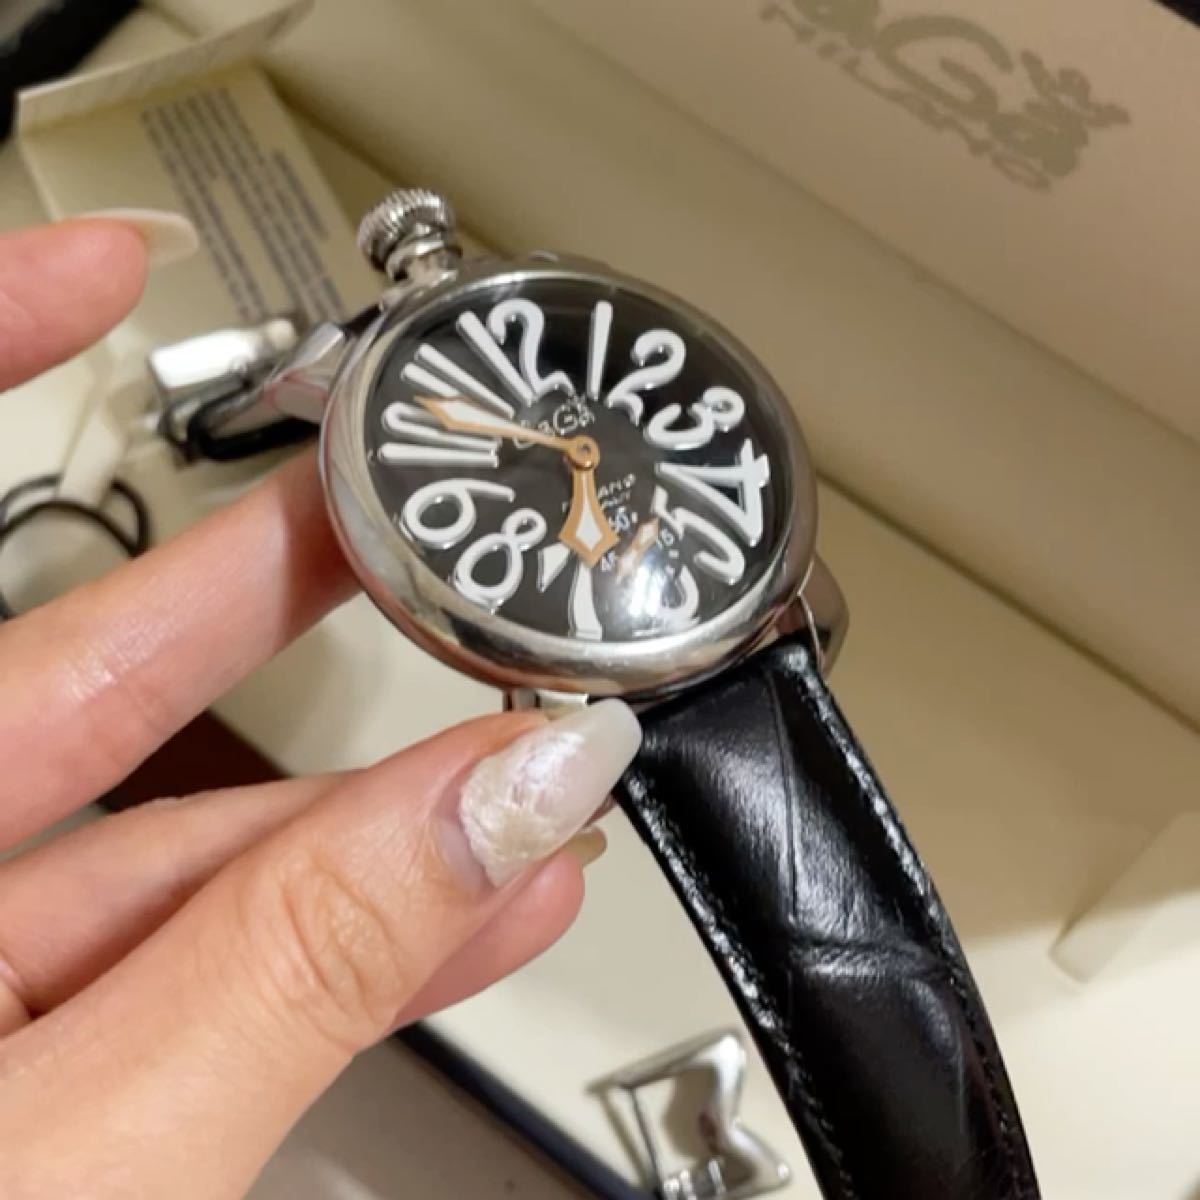 ガガミラノGaGaMILANO マヌアーレ 48mm メンズ腕時計 付属品あり-